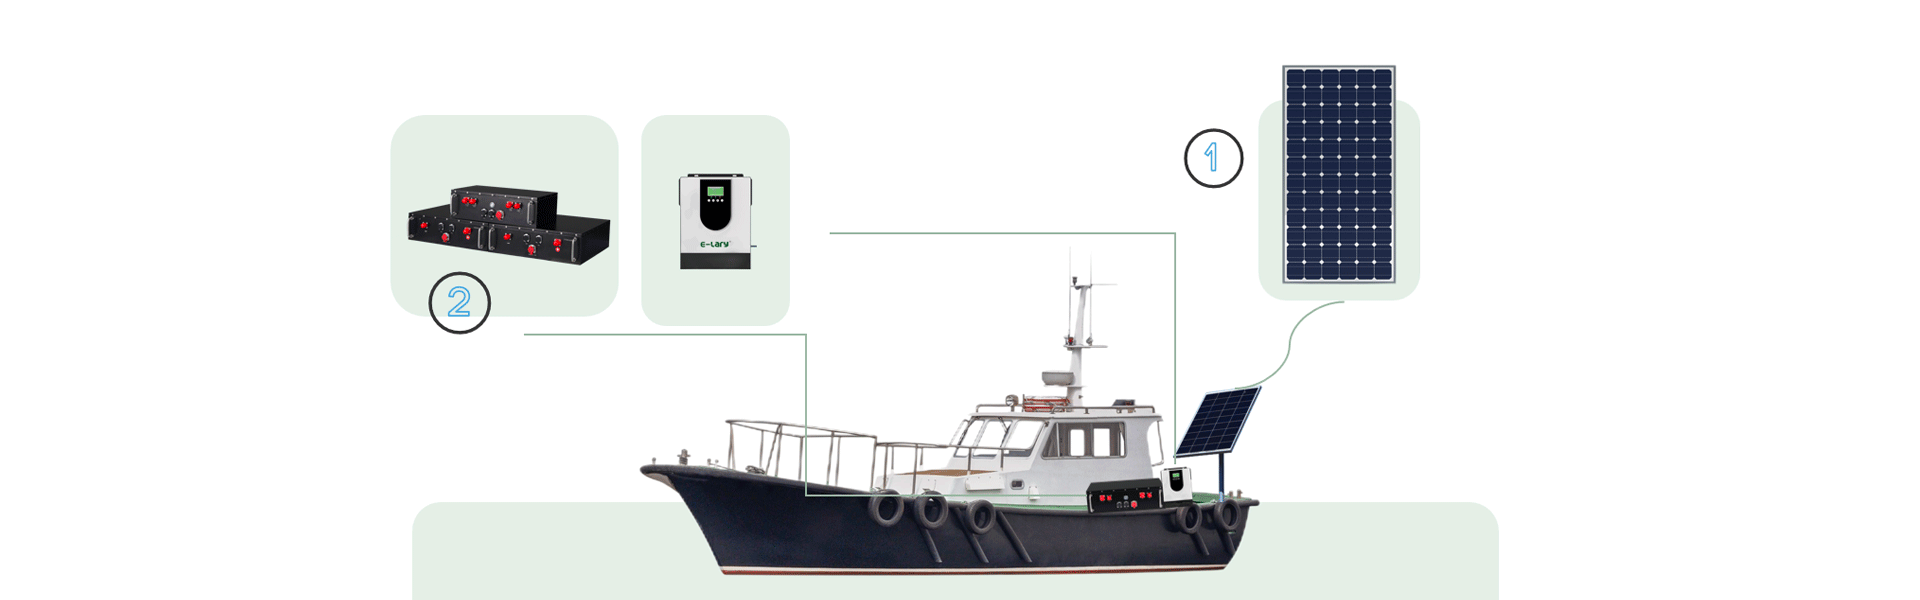 Solución de sistema de almacenamiento de energía solar con batería marina LifePO4 apilada de 5000W